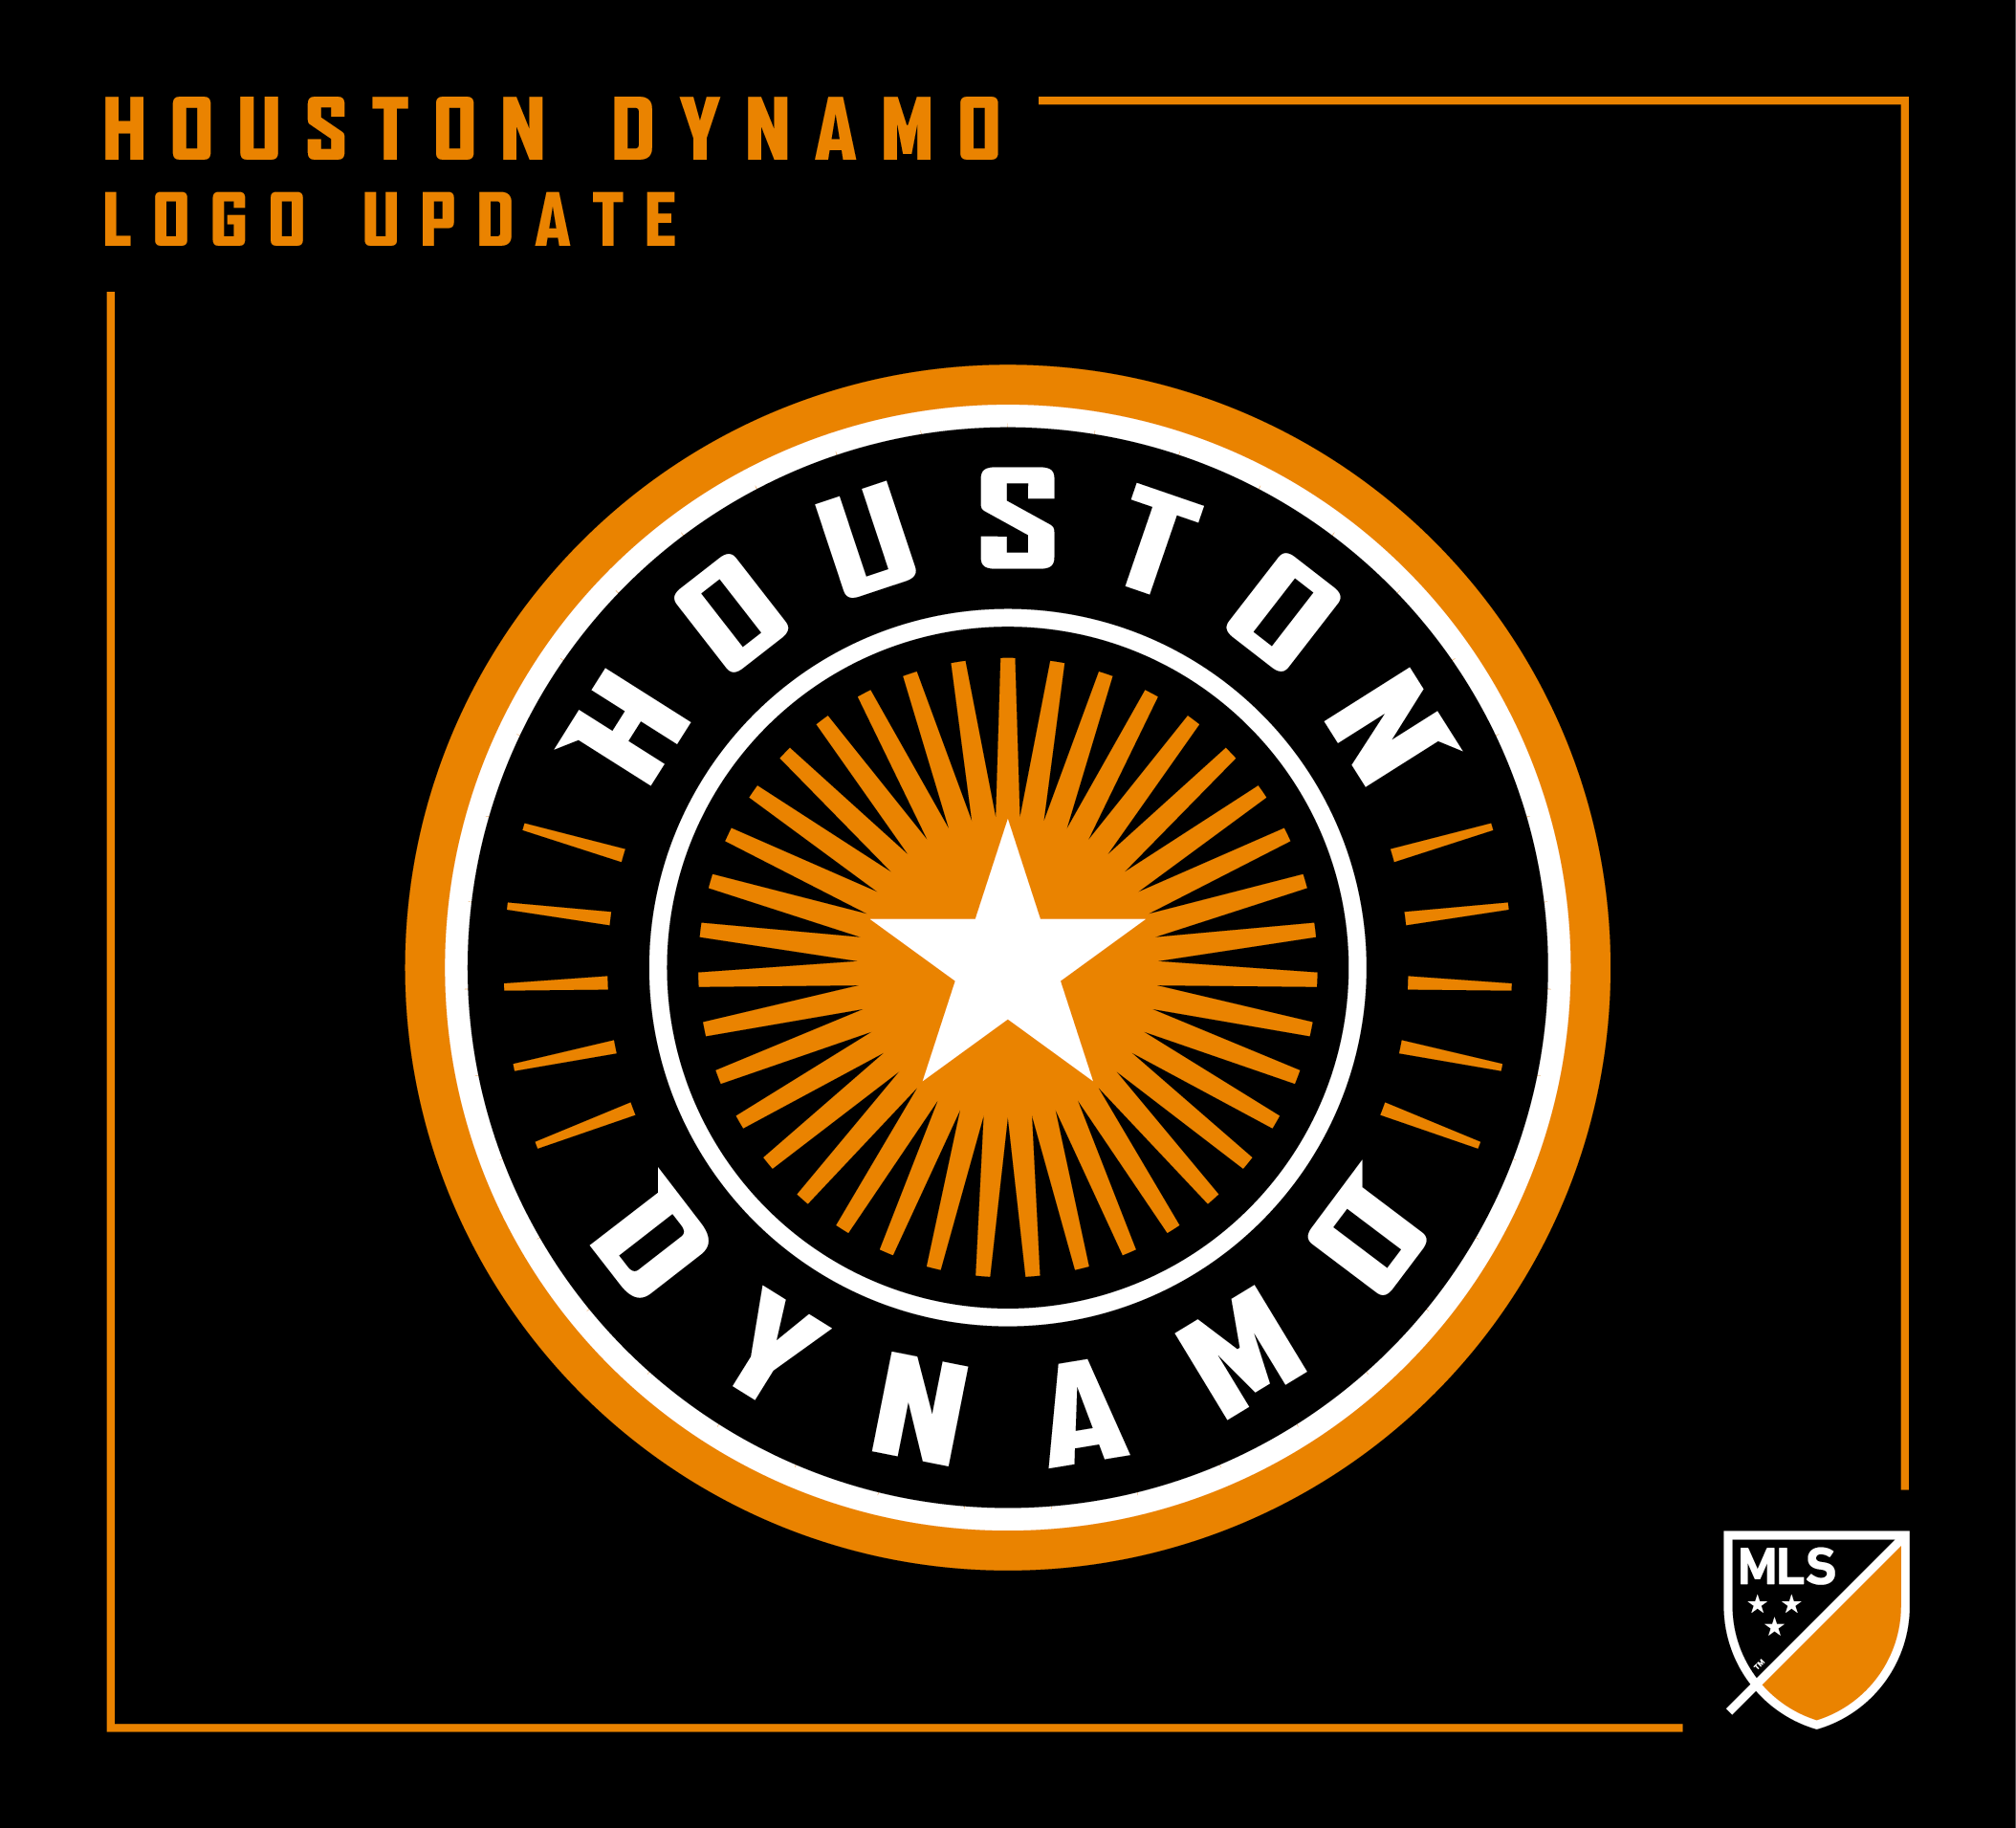 Dynamo Logo - MLS | Houston Dynamo Logo Update - Concepts - Chris Creamer's Sports ...